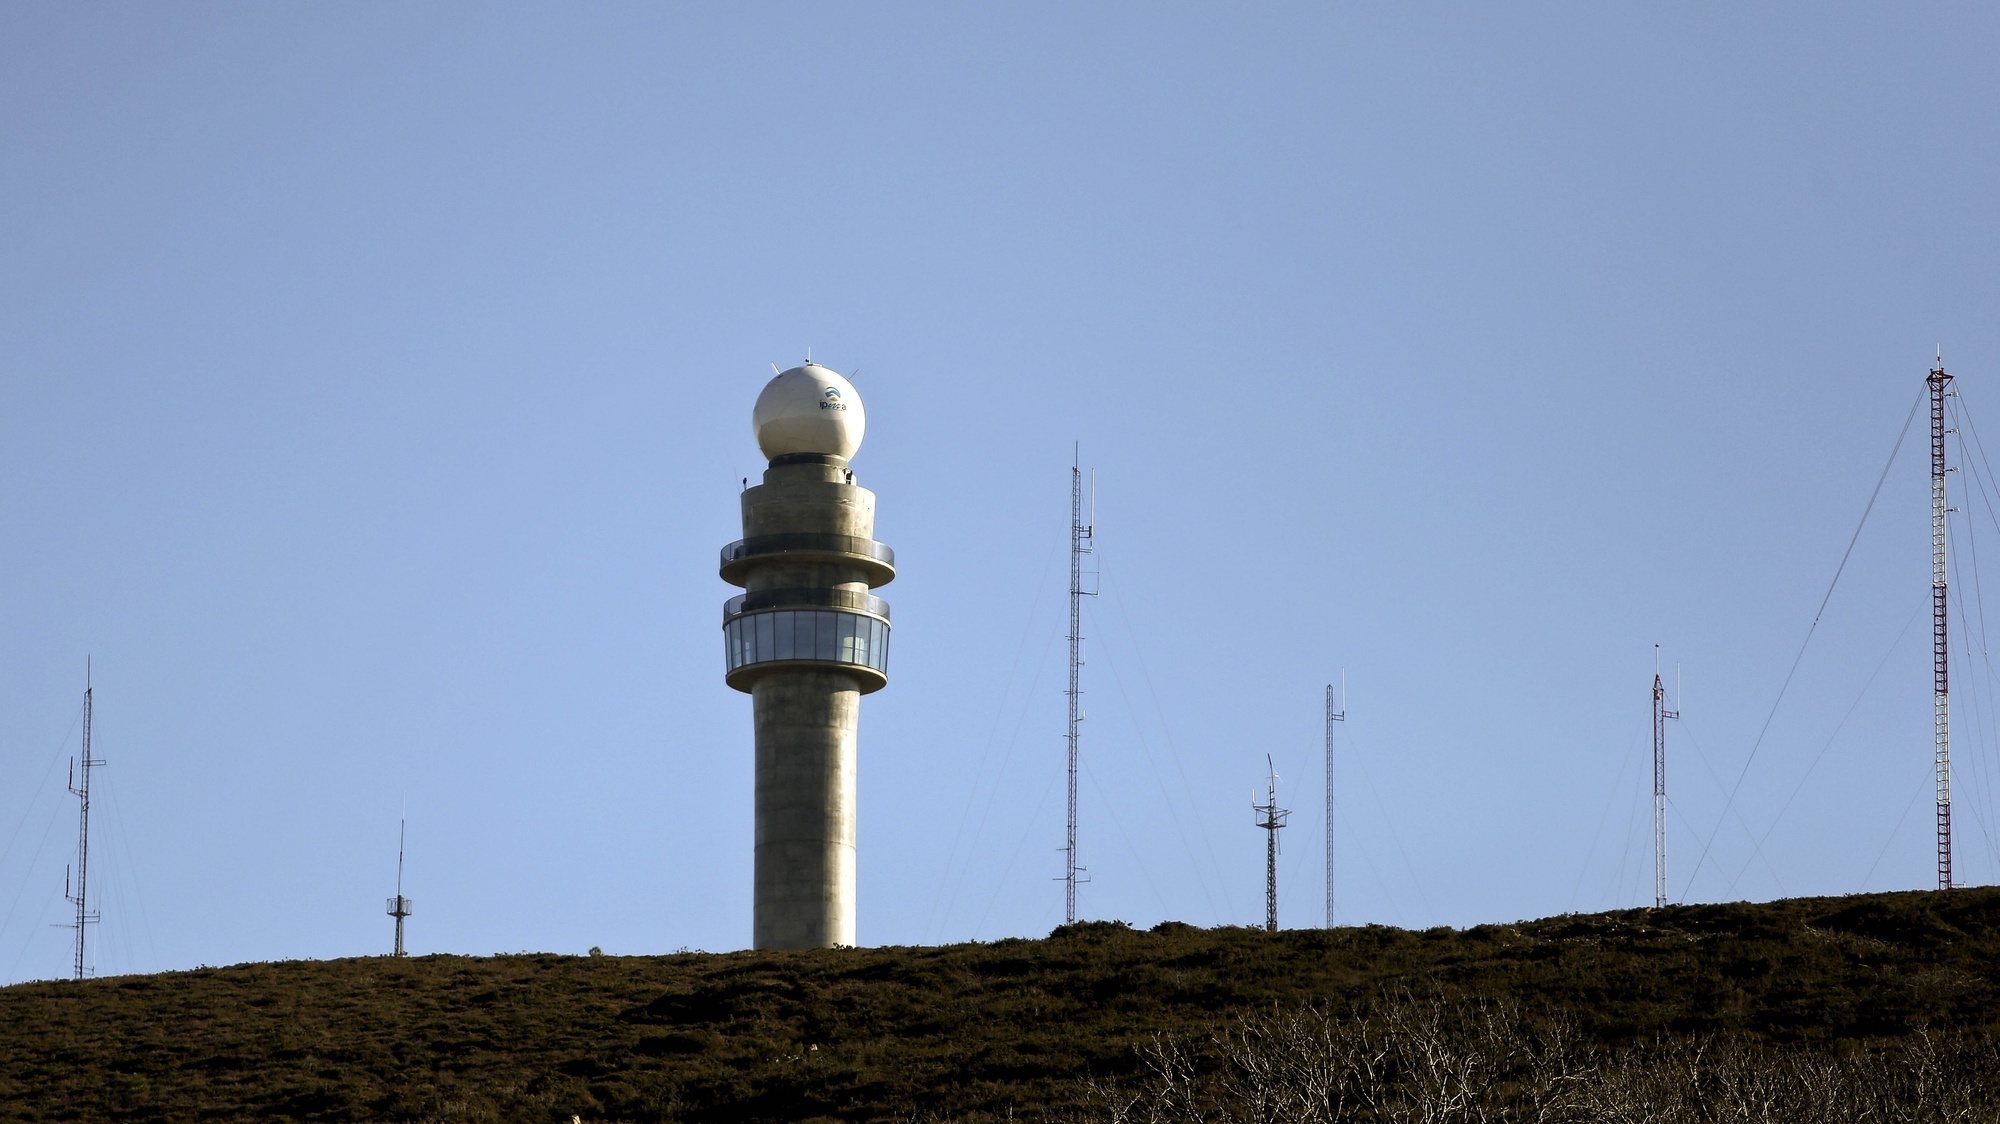 Radar meteorológico de Arouca, na Serra da Freita, hoje inaugurado pelo Presidente da República, Aníbal Cavaco Silva (ausente da foto), Arouca, 18 Fevereiro 21015. ESTELA SILVA/LUSA